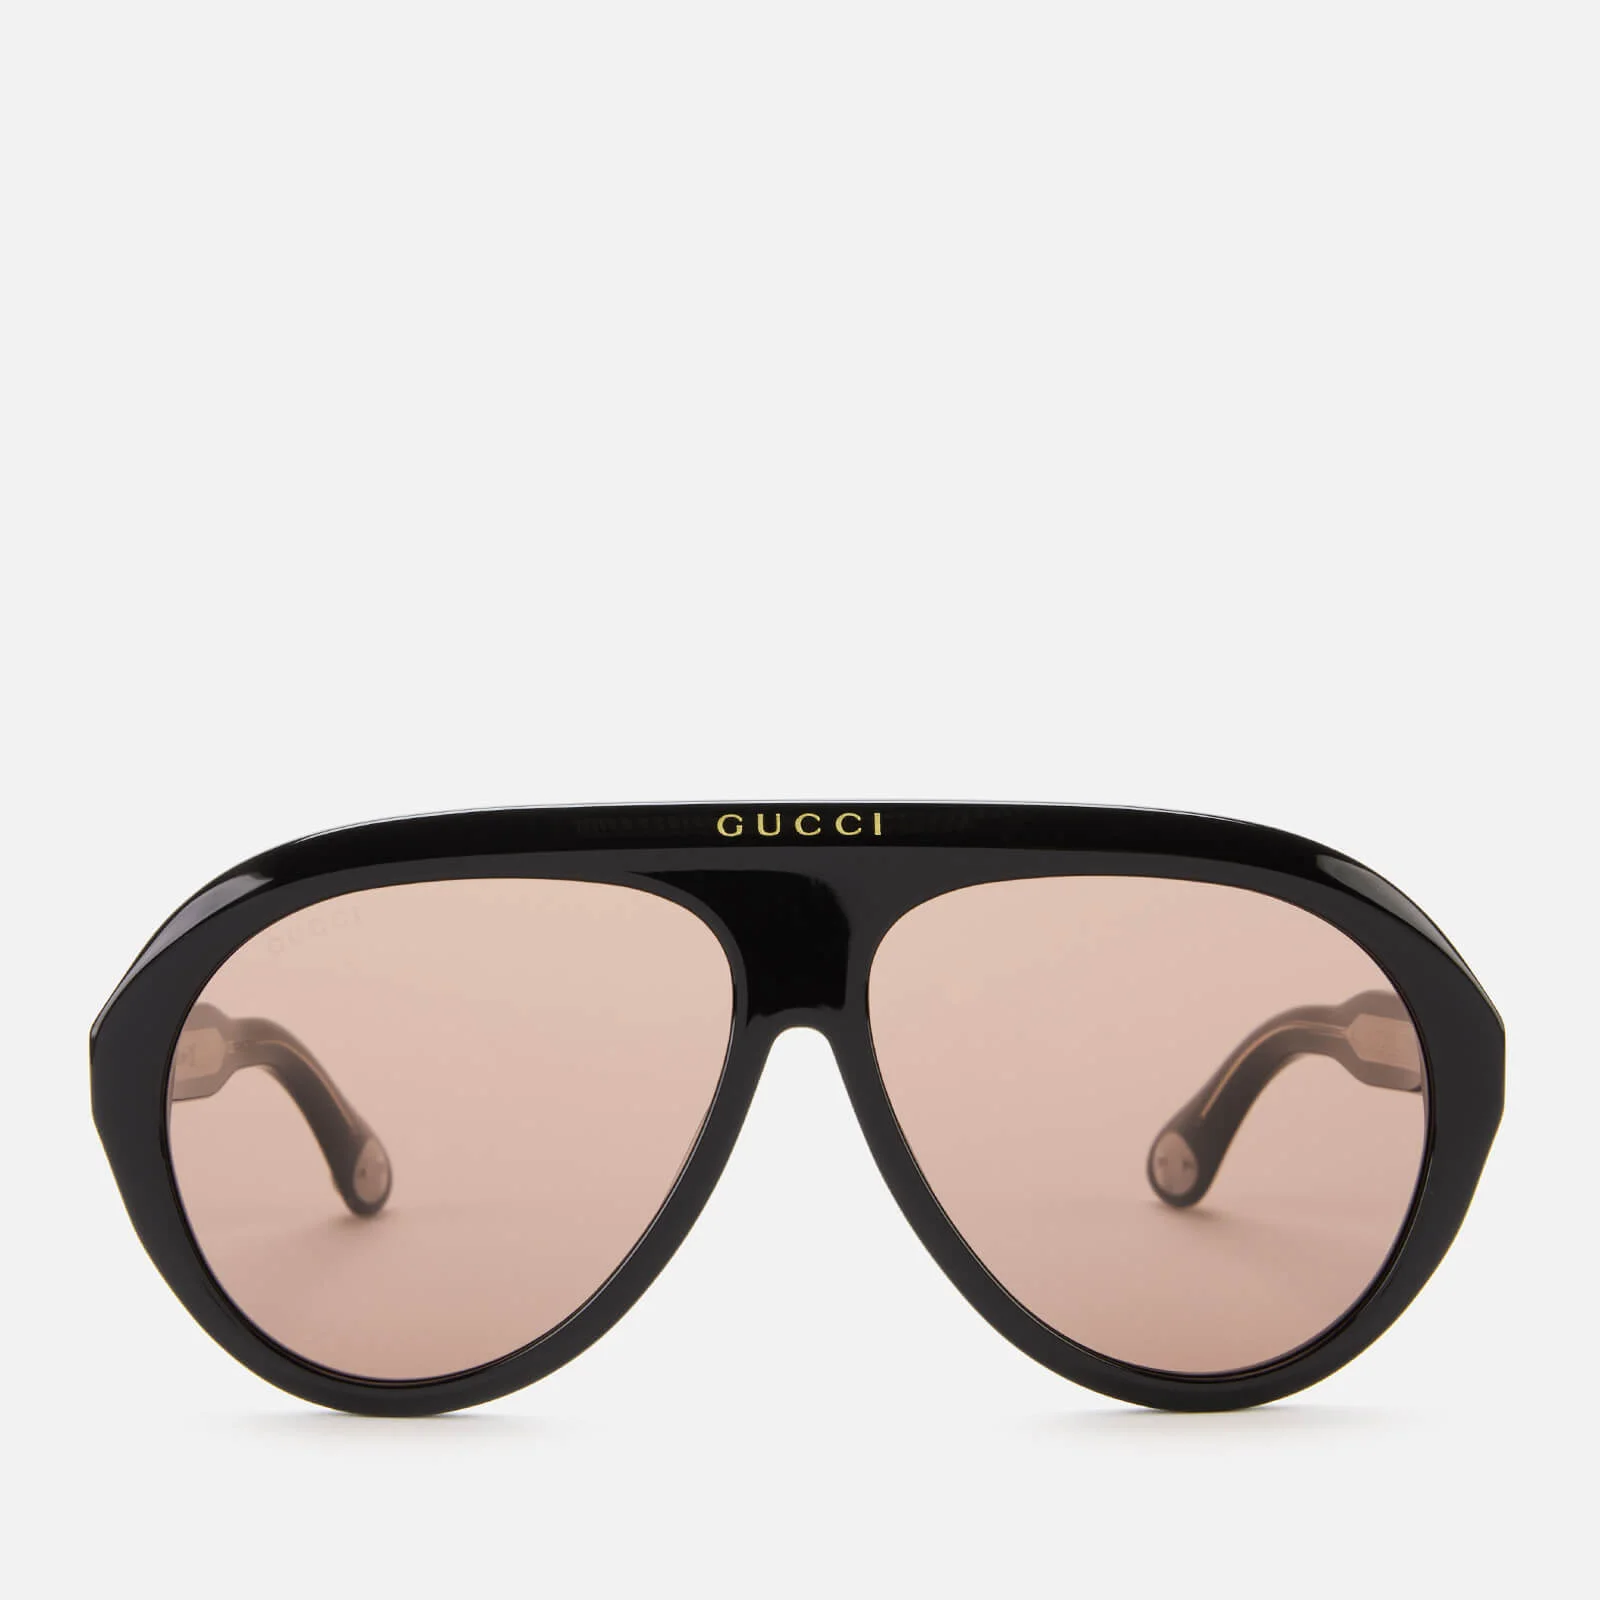 Gucci Men's Aviator Style Sunglasses - Black/Brown Image 1